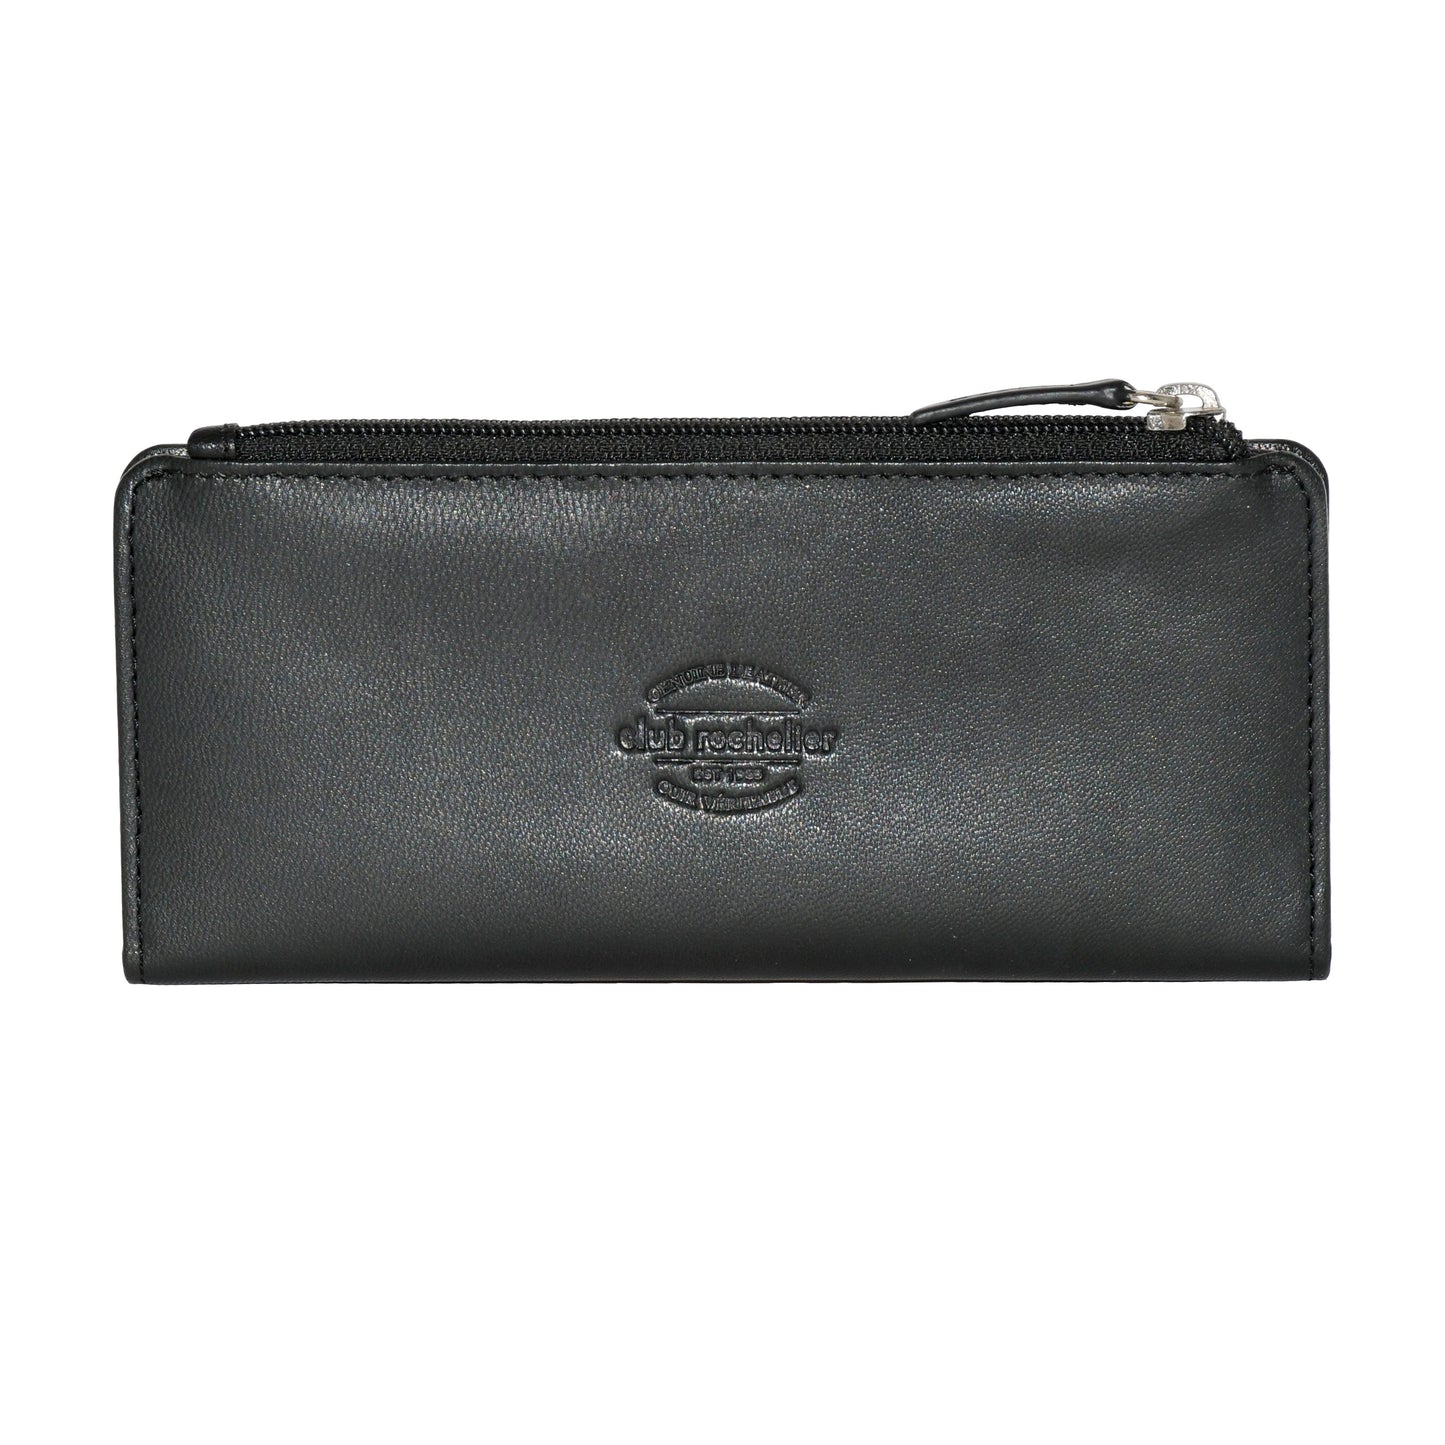 Ladies' Slim Clutch Wallet With Top Zipper